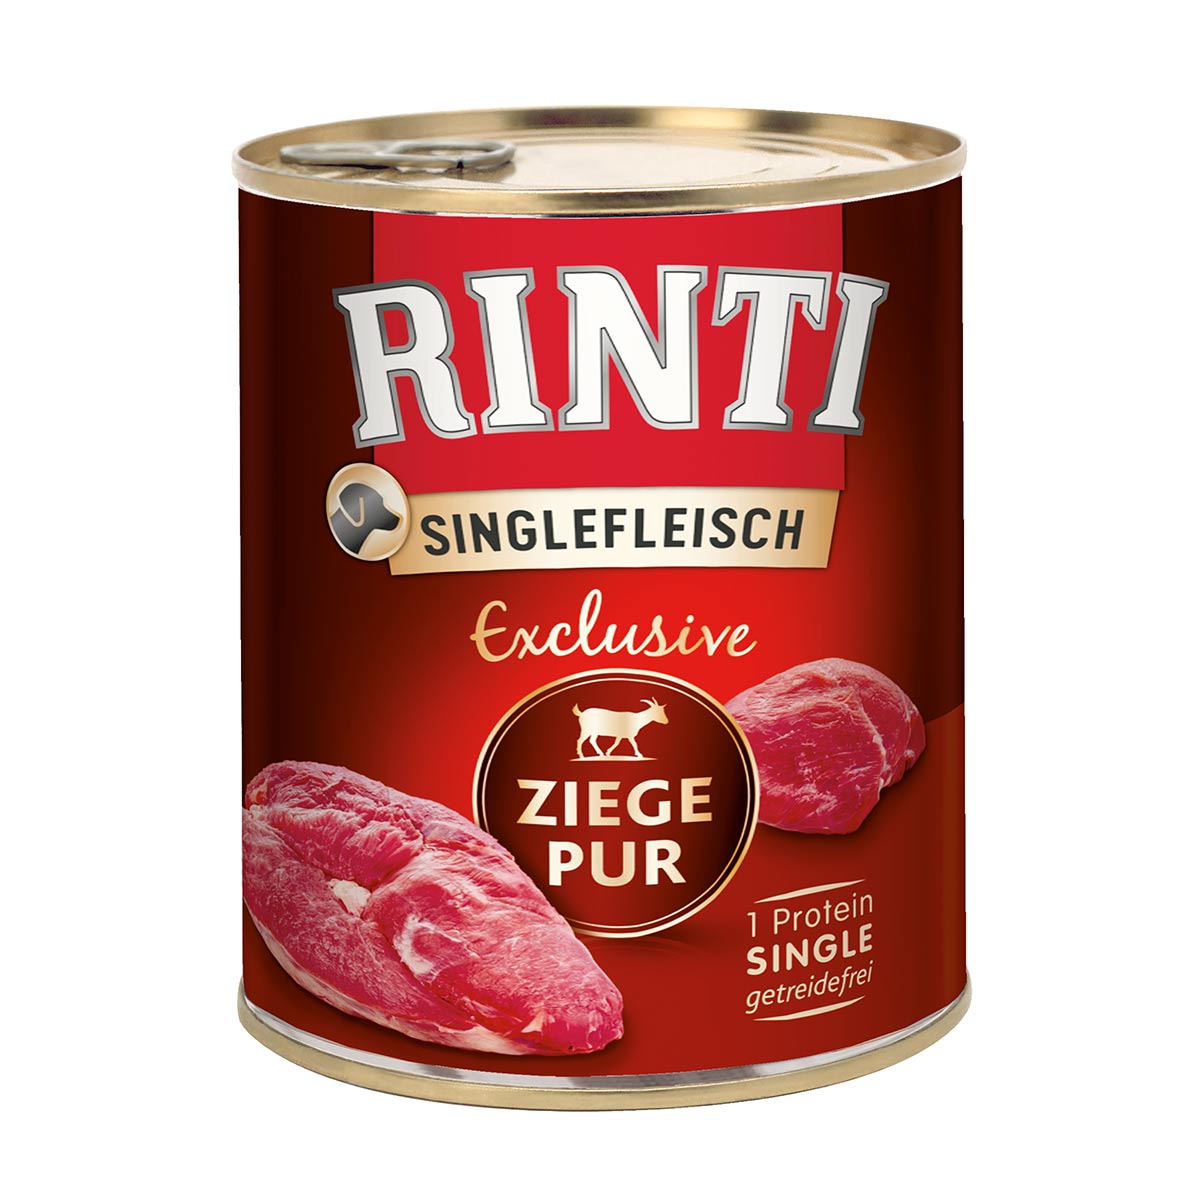 Rinti Singlefleisch Exclusive Ziege Pur 6x800g von Rinti